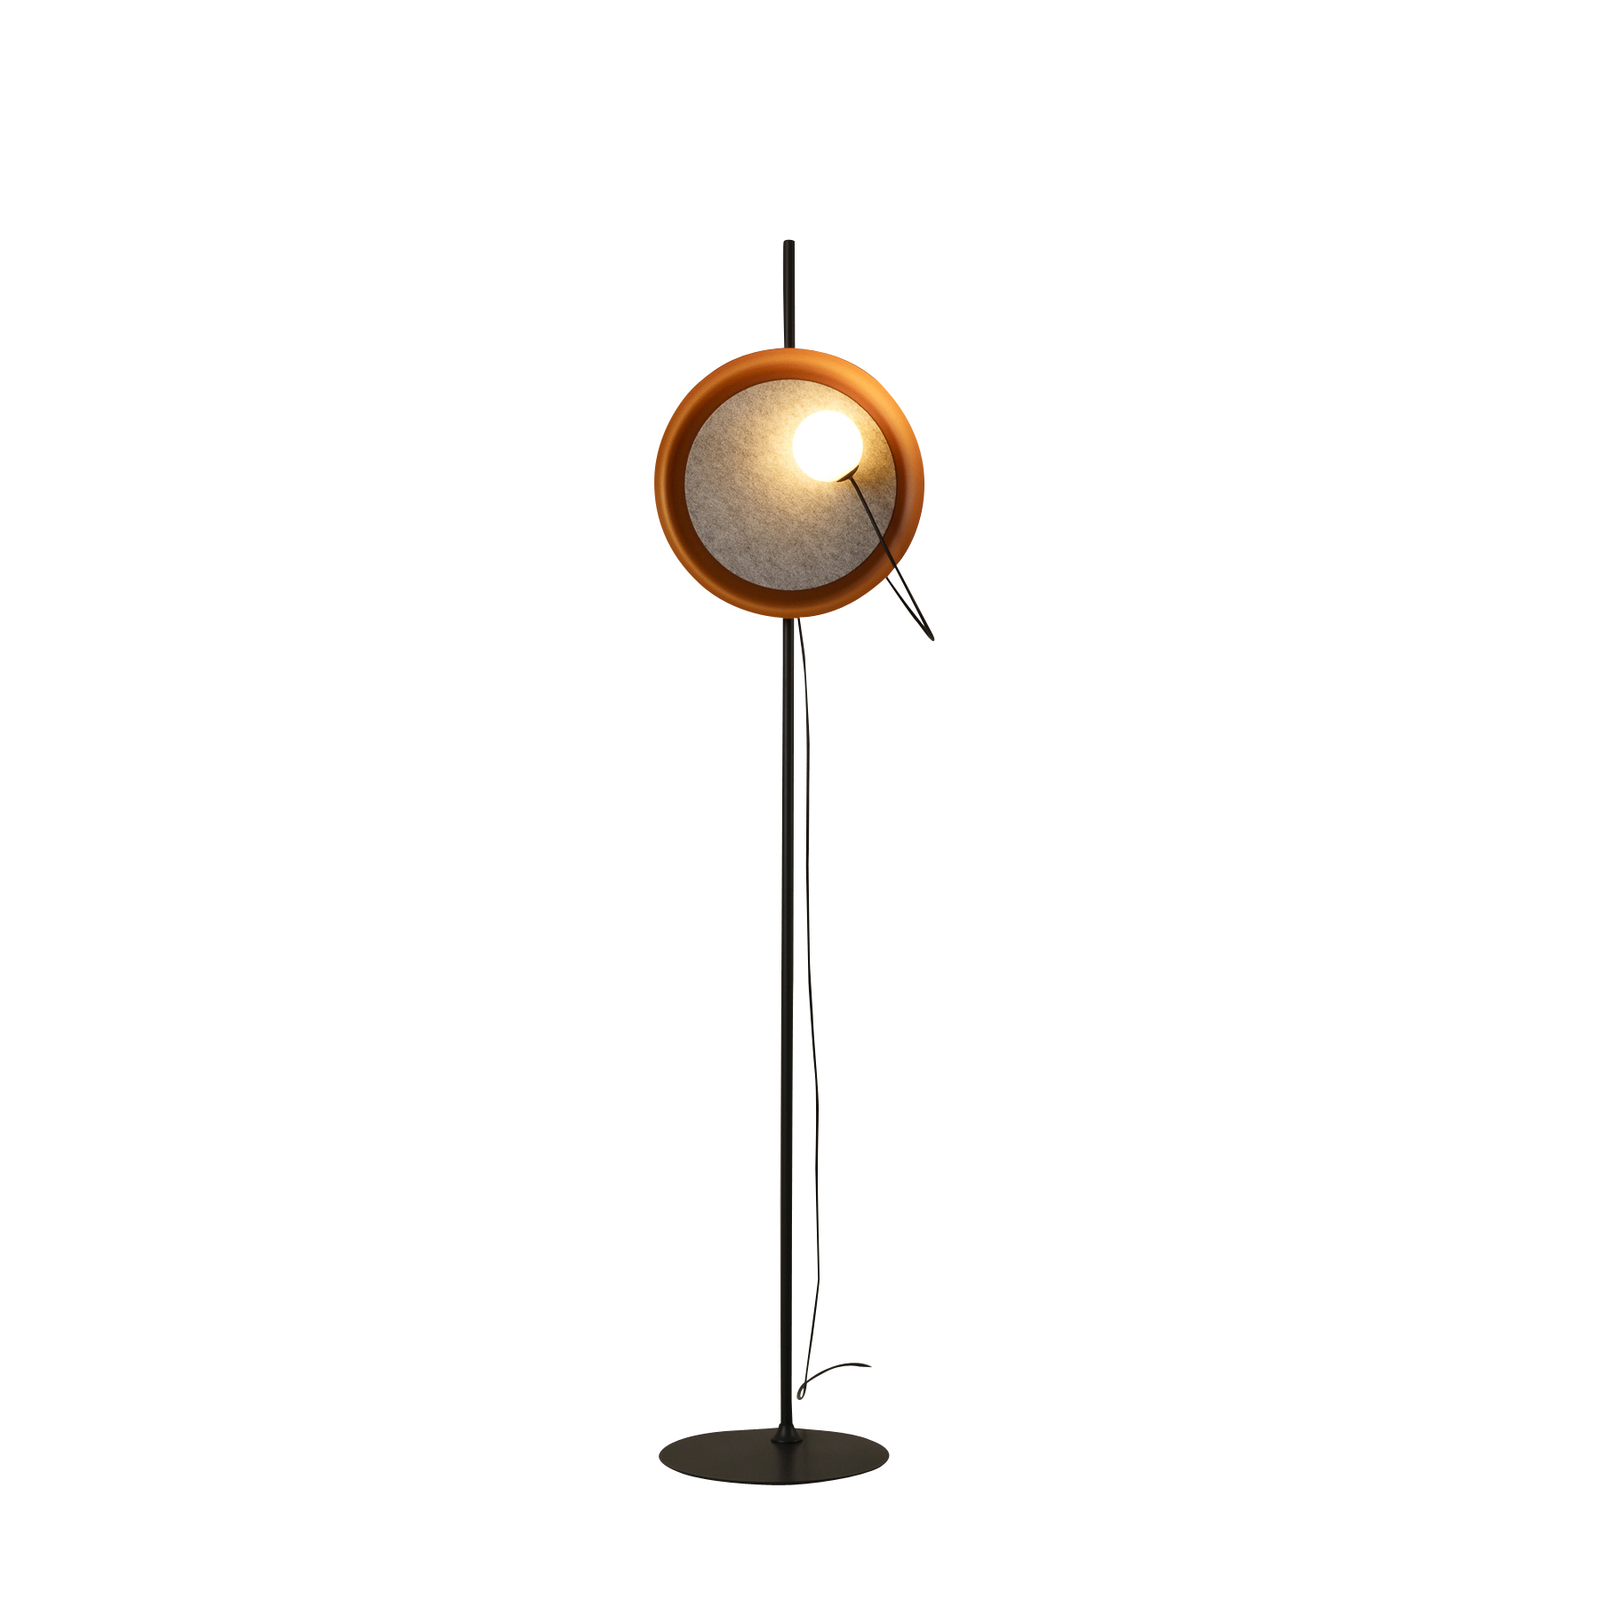 Milan Wire lampe sur pied Ø 38 cm cuivre métallique/anthracite